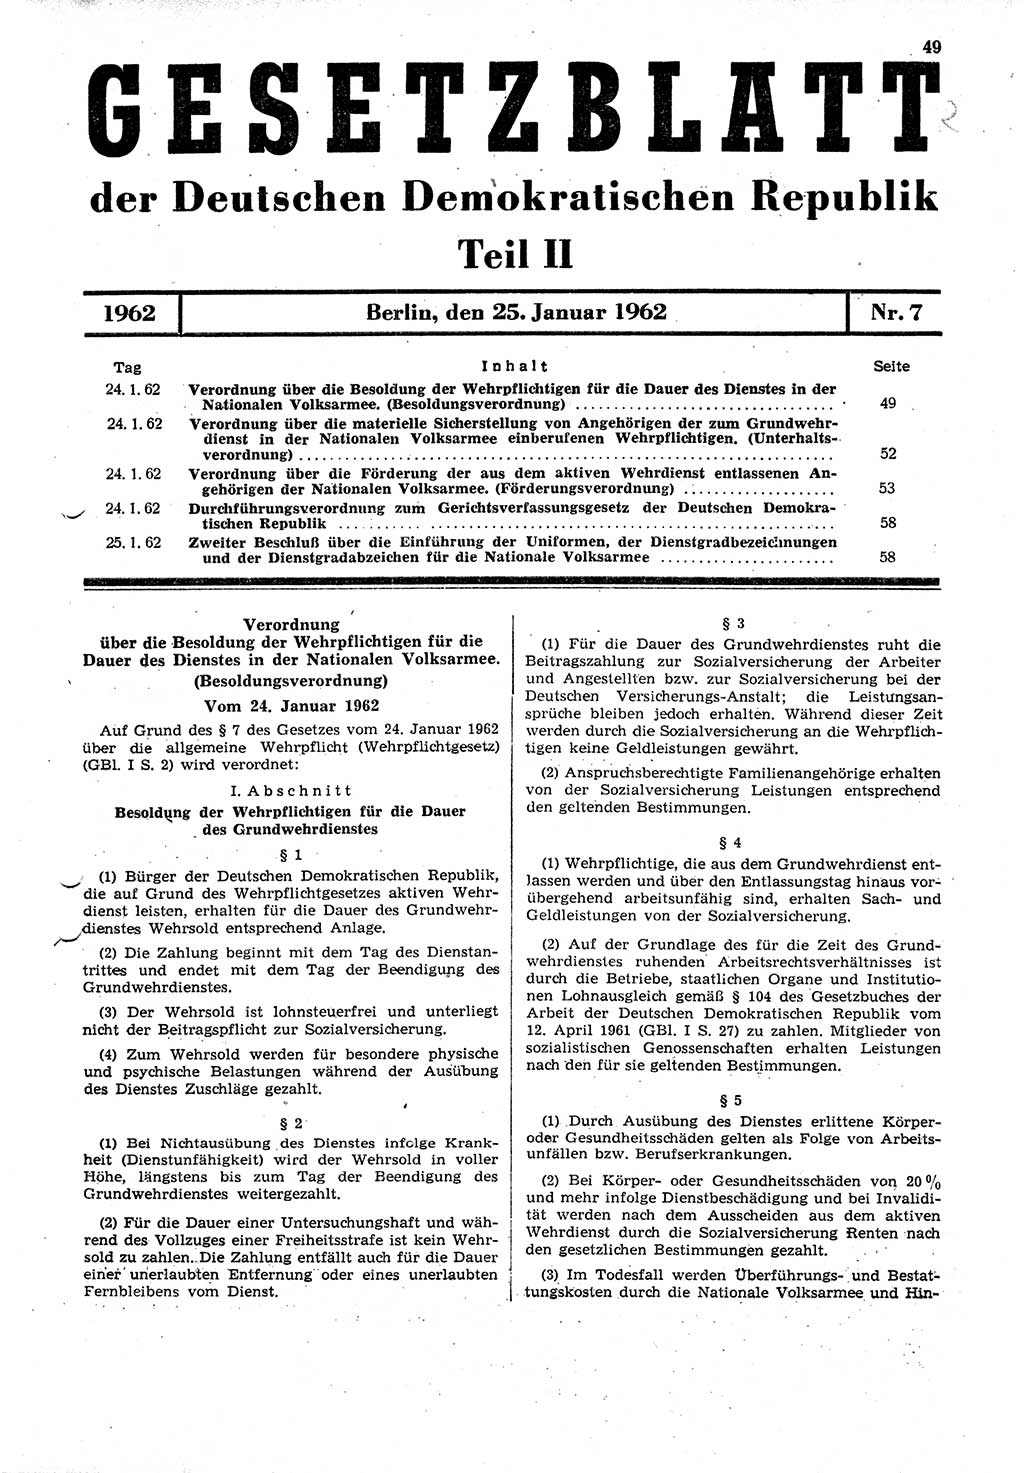 Gesetzblatt (GBl.) der Deutschen Demokratischen Republik (DDR) Teil ⅠⅠ 1962, Seite 49 (GBl. DDR ⅠⅠ 1962, S. 49)